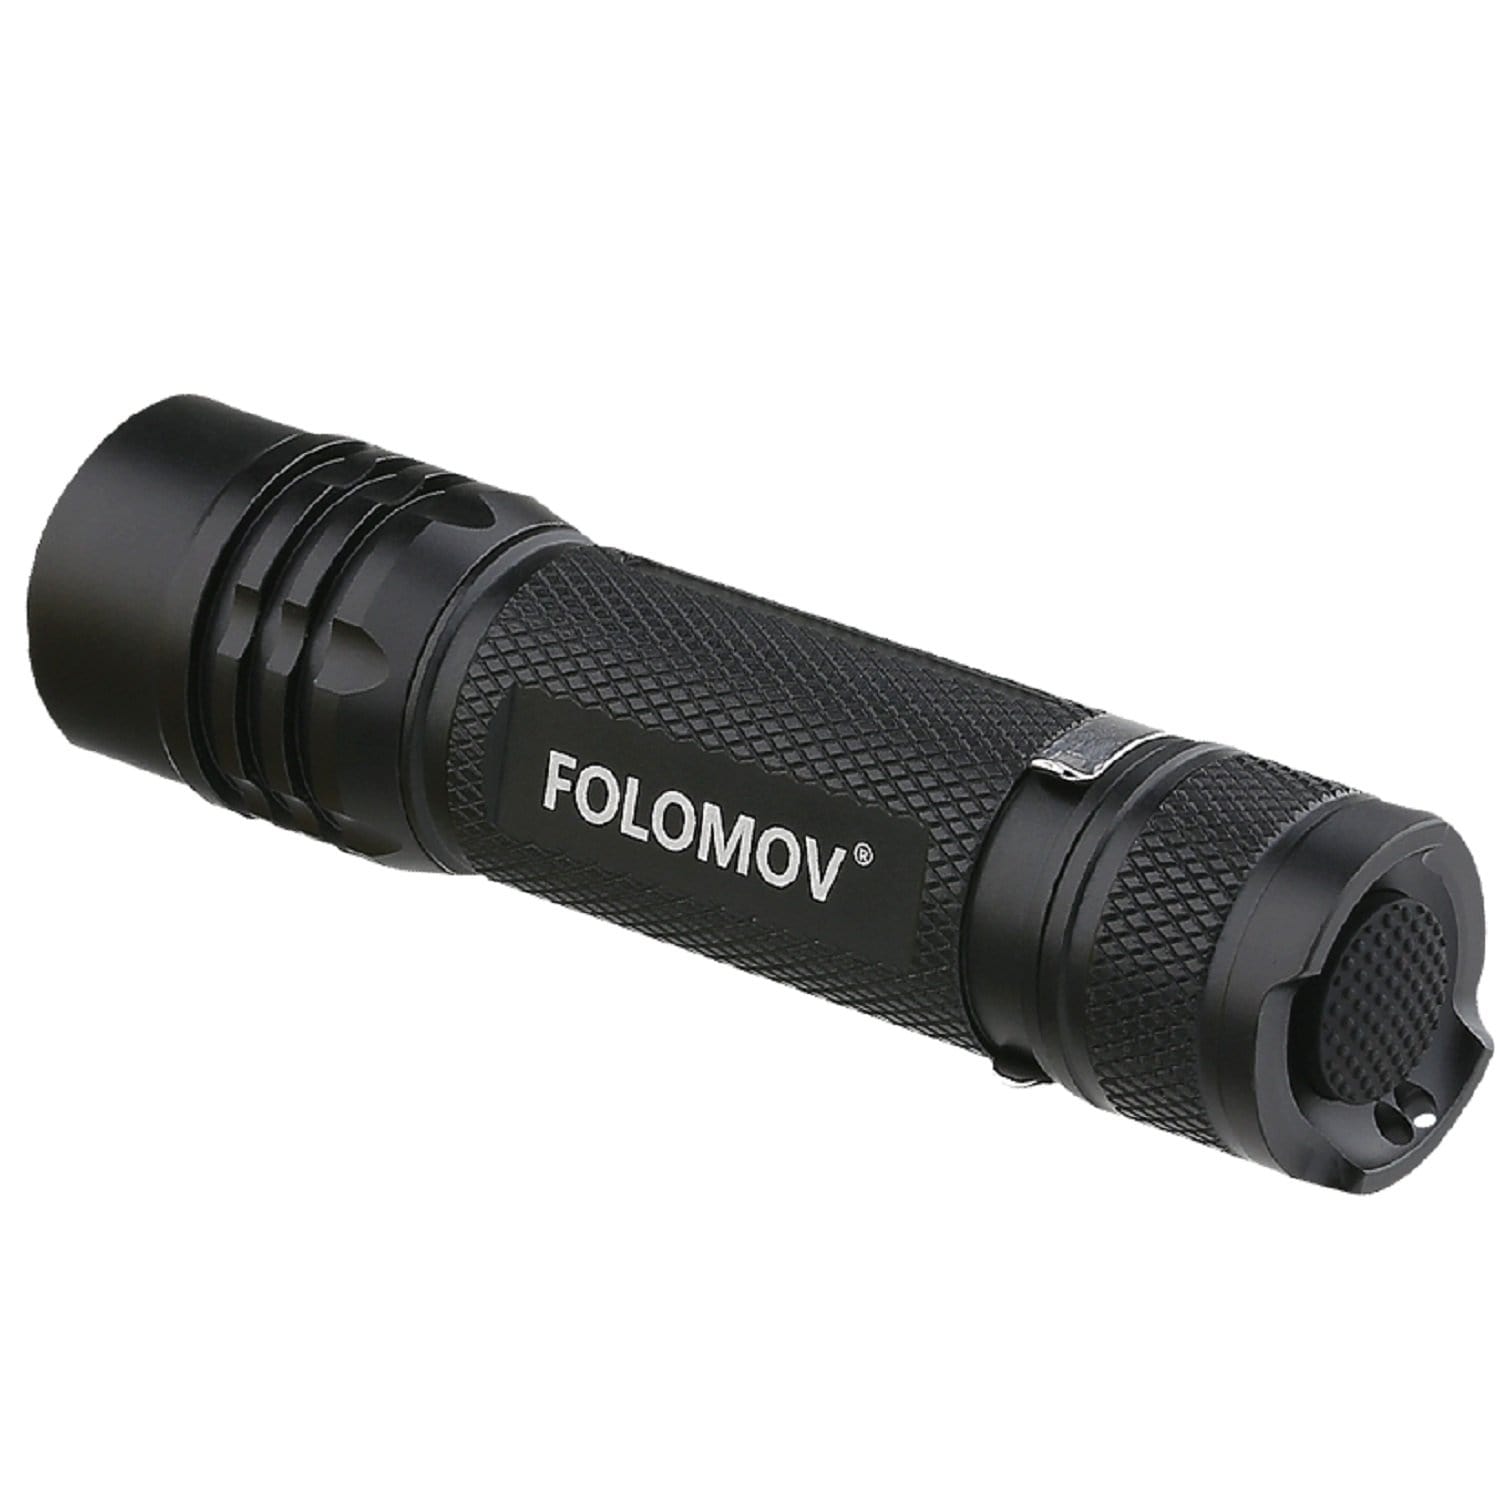 Folomov Lights : Handheld Lights Folomov 18650S Tactical Flashlight 960 Lumens